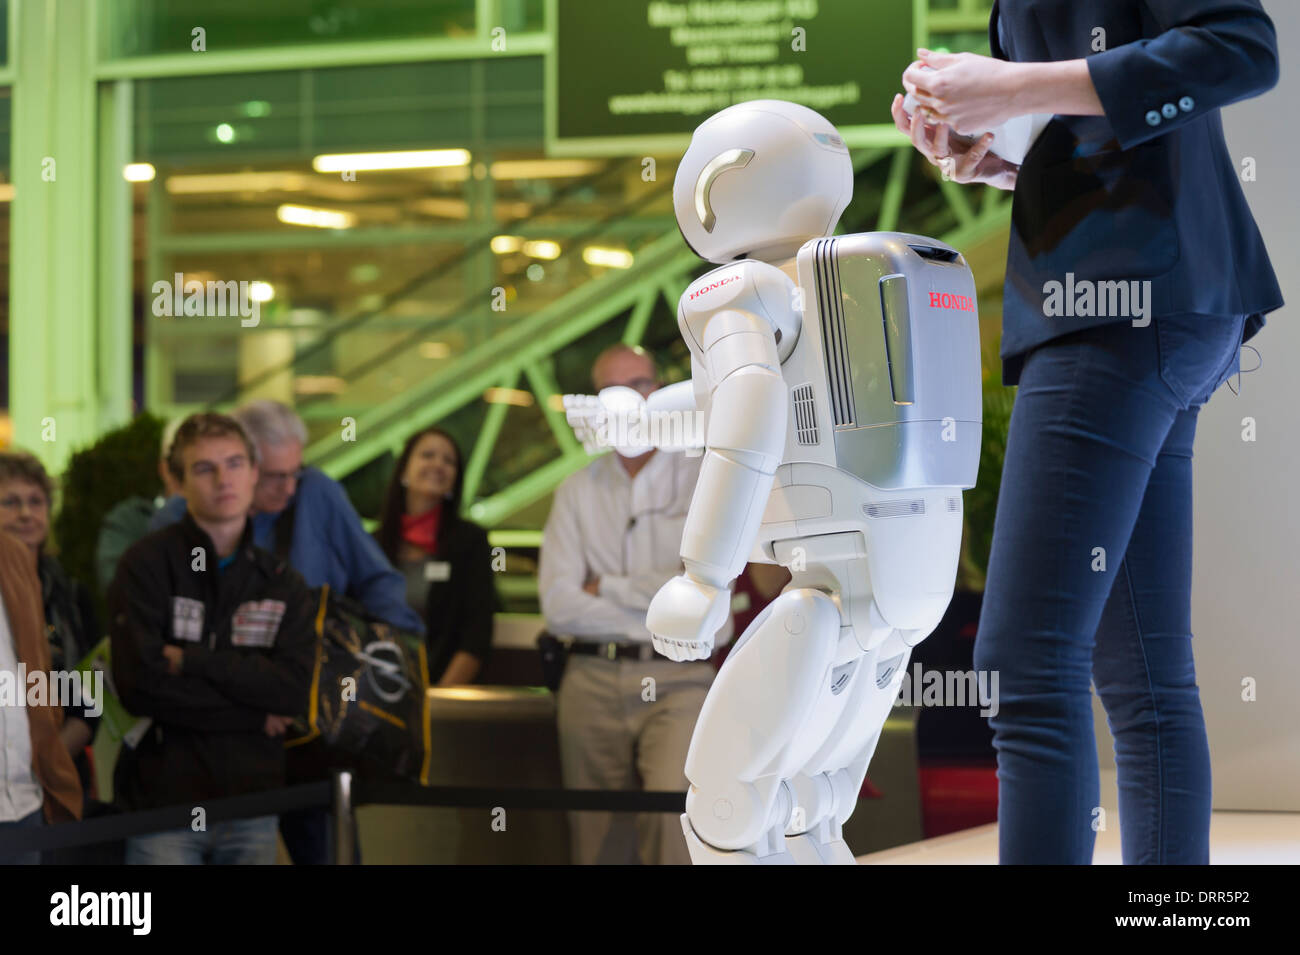 Roboter "Asimo", entwickelt von der japanische Autobauer Honda ist Besuchern der Zürich Motor Show auf der Bühne präsentiert. Stockfoto